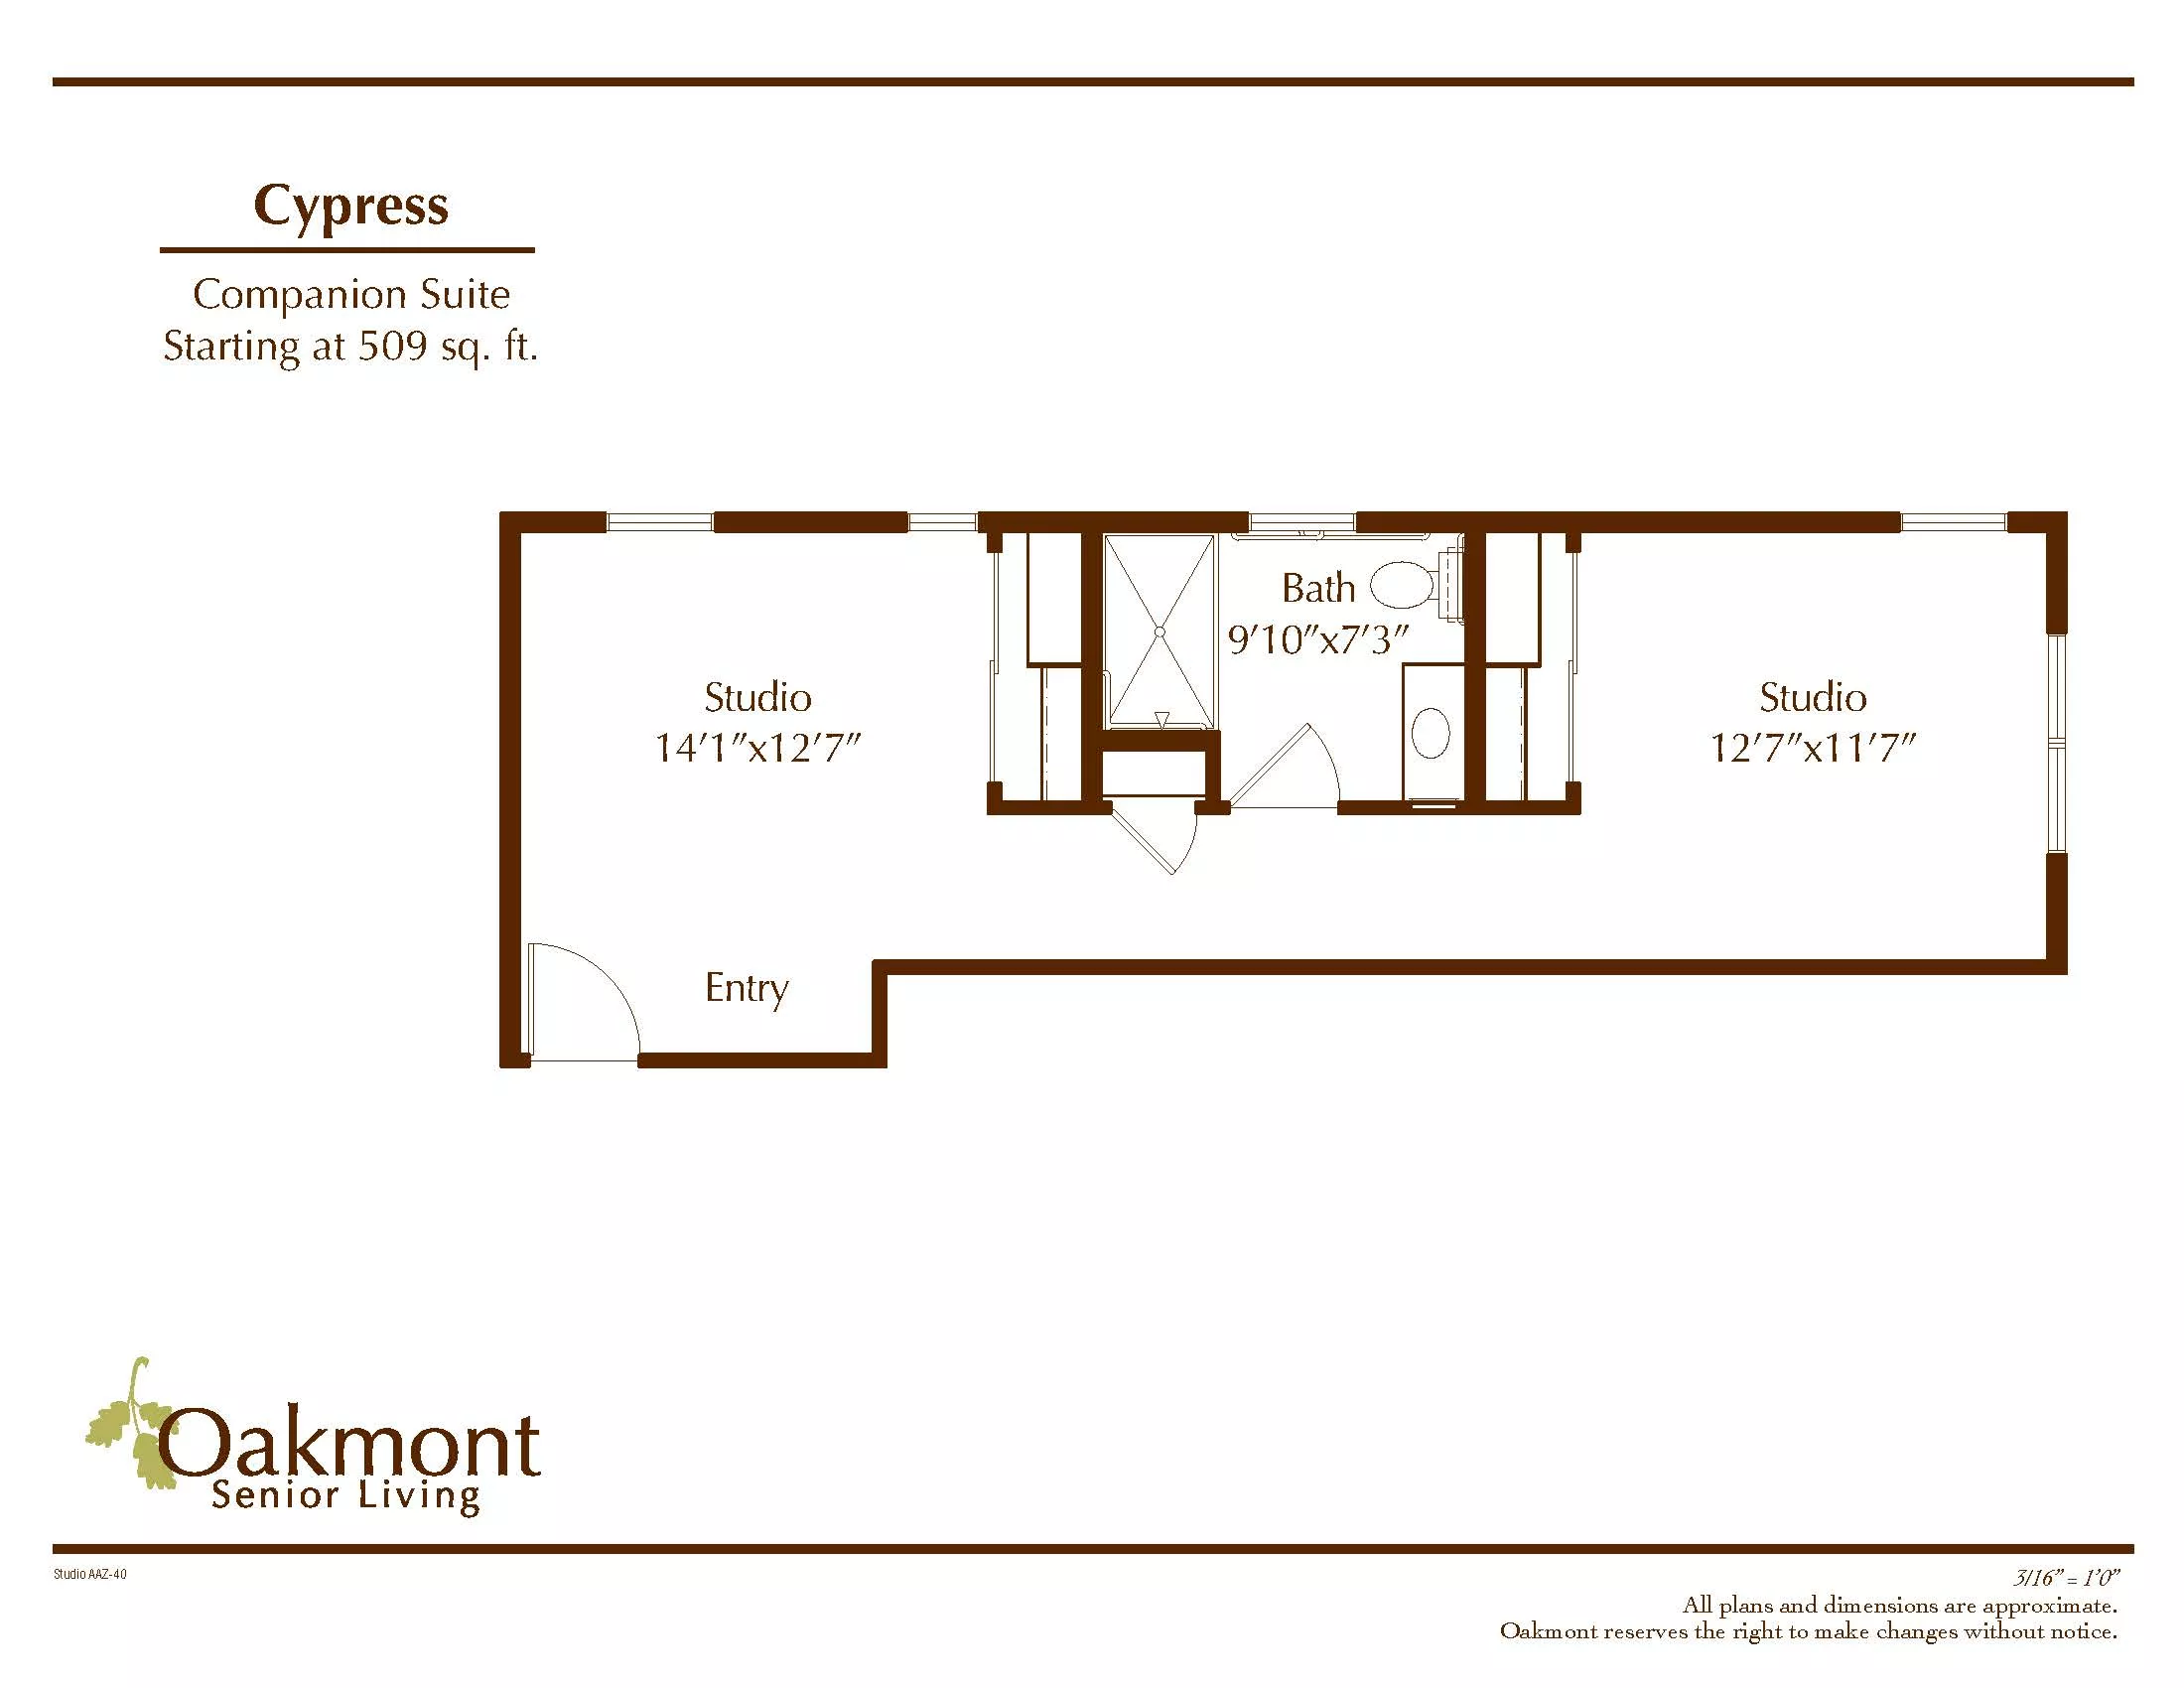 Cypress floor plan